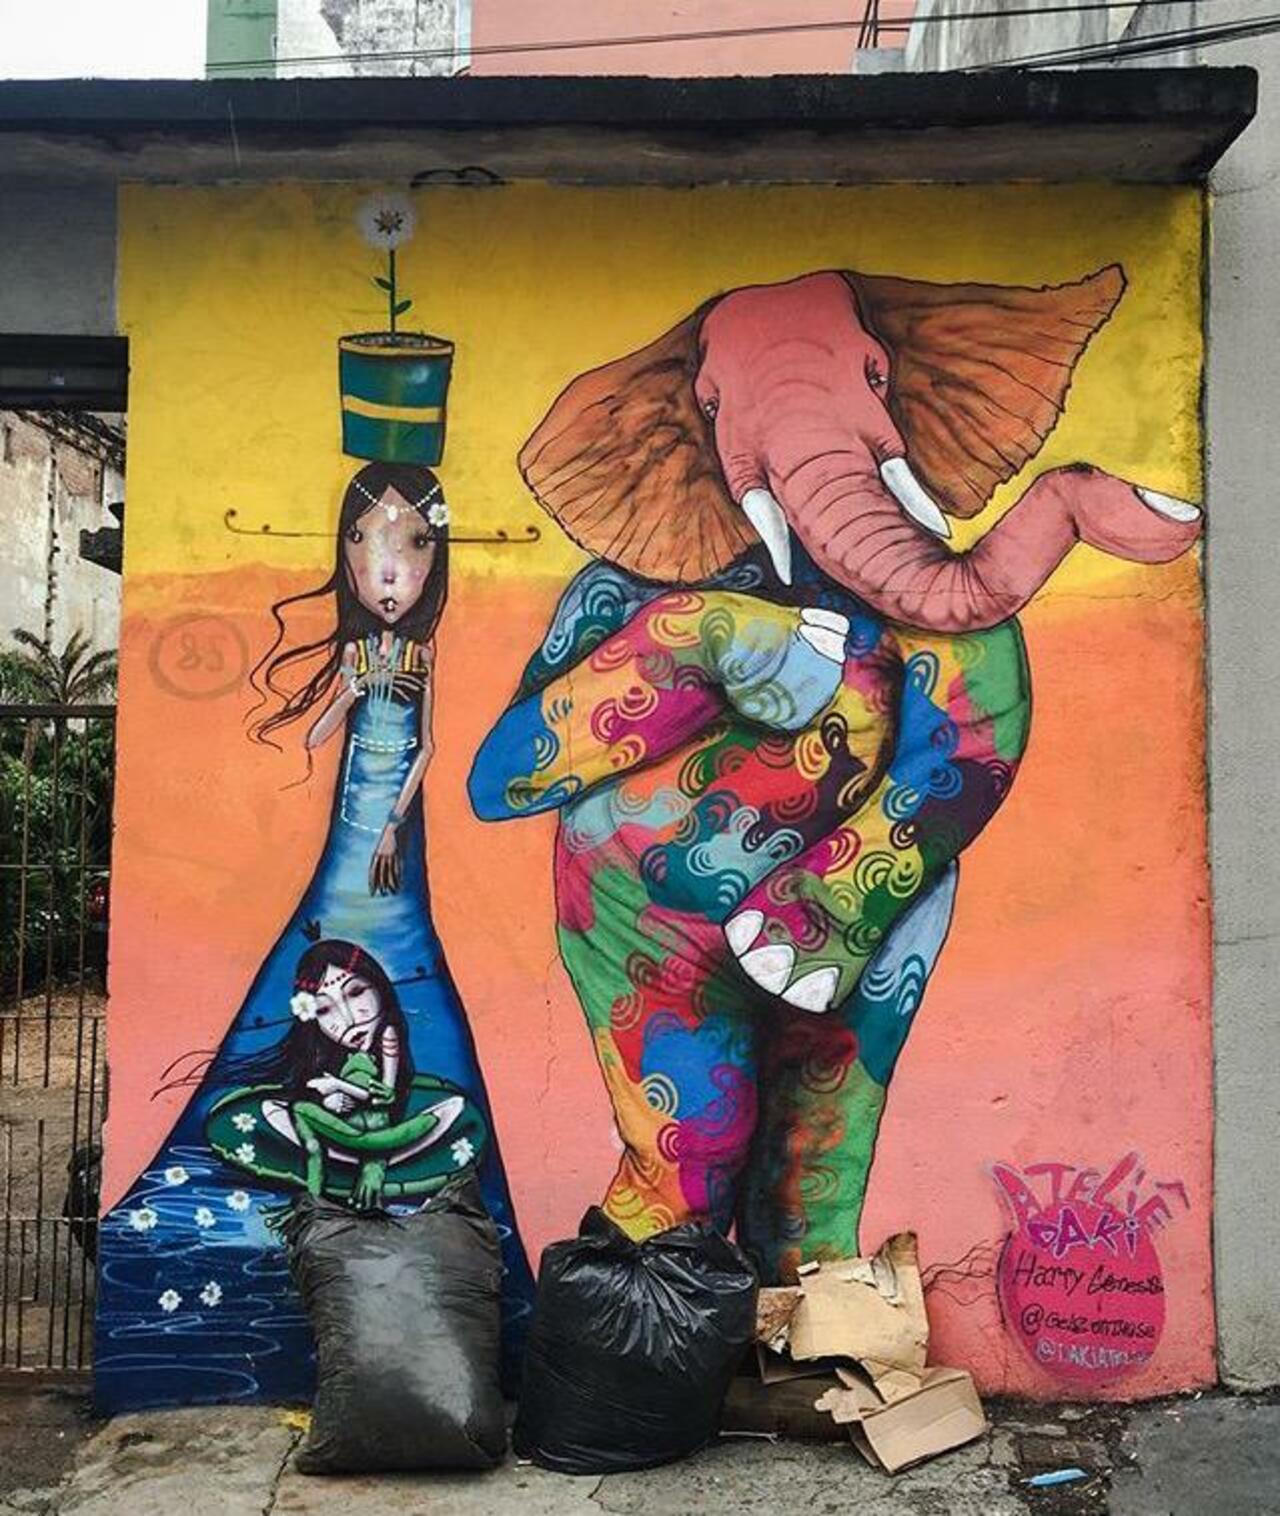 Street Art by Harry Geneis & Gelson in São Paulo 

#art #mural #graffiti #streetart http://t.co/6s5oBLU9M8